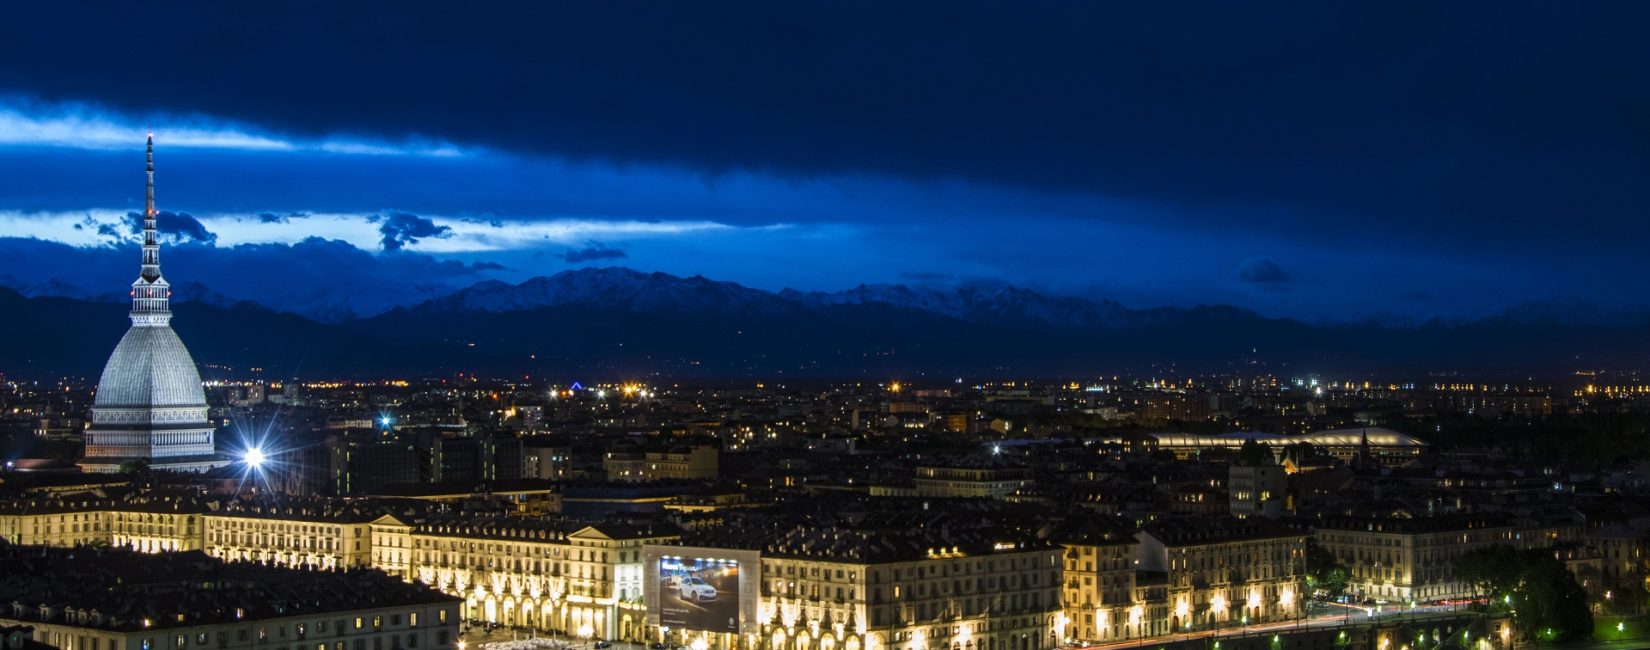 Vivi la Torino notturna